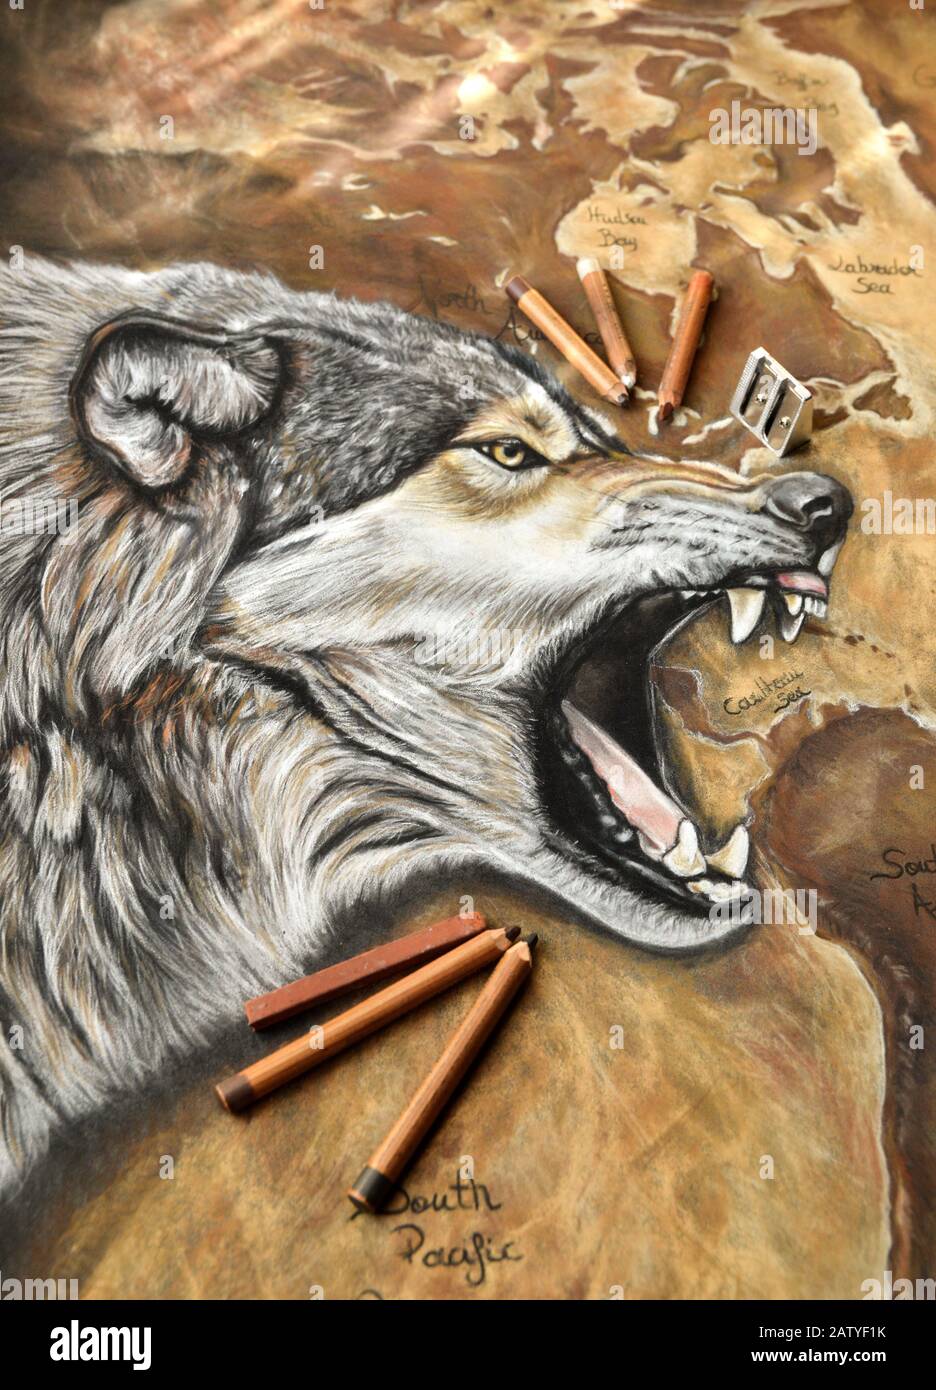 Magnifique peinture d'art animal avec un loup agressif Banque D'Images